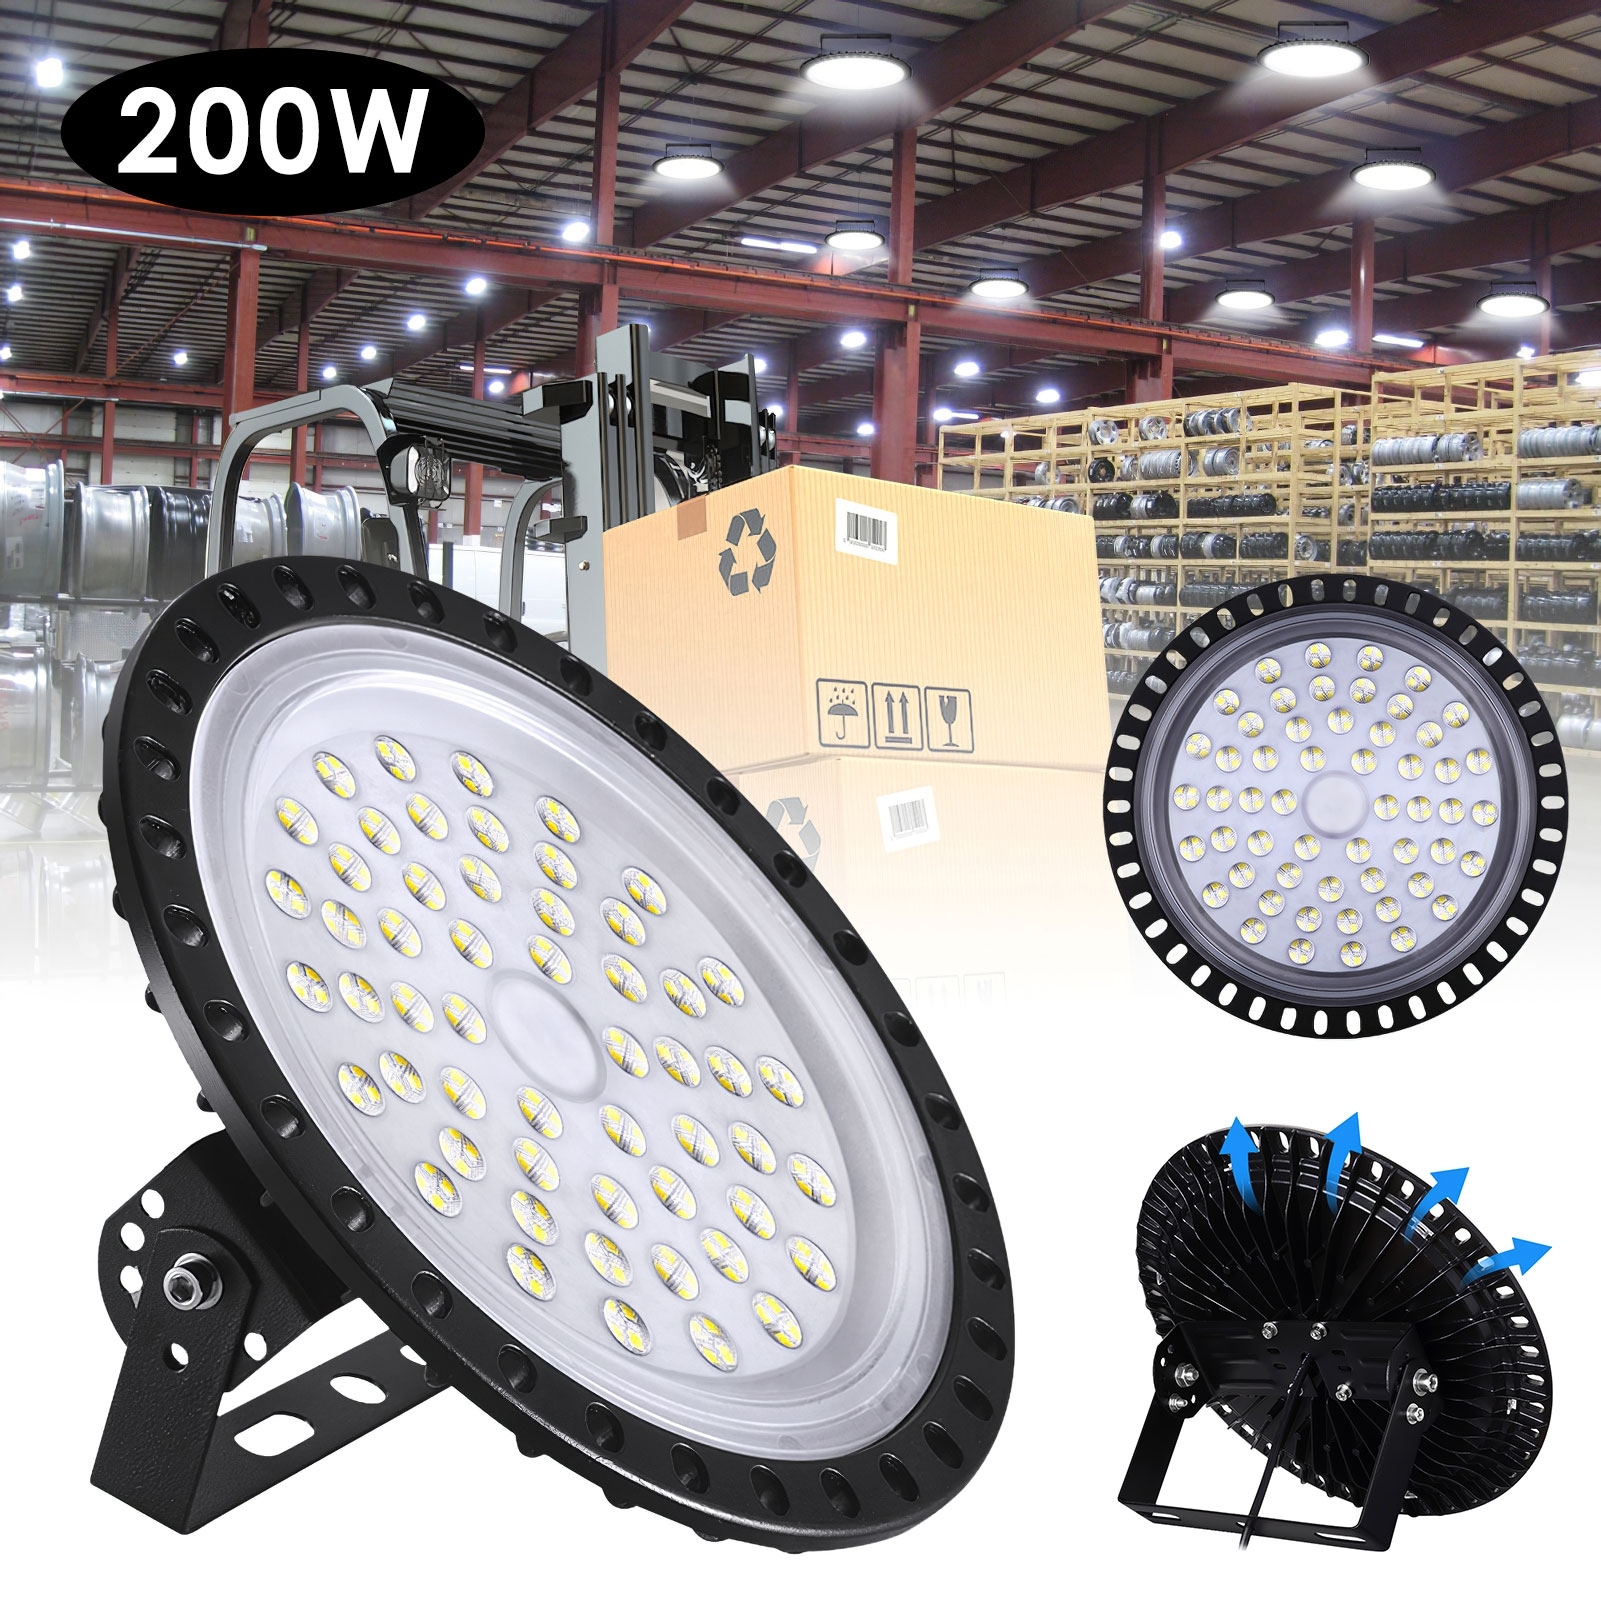 500W 300W 250W 200W 150W 100W UFO LED High Bay Light Factory Warehouse Lighting 